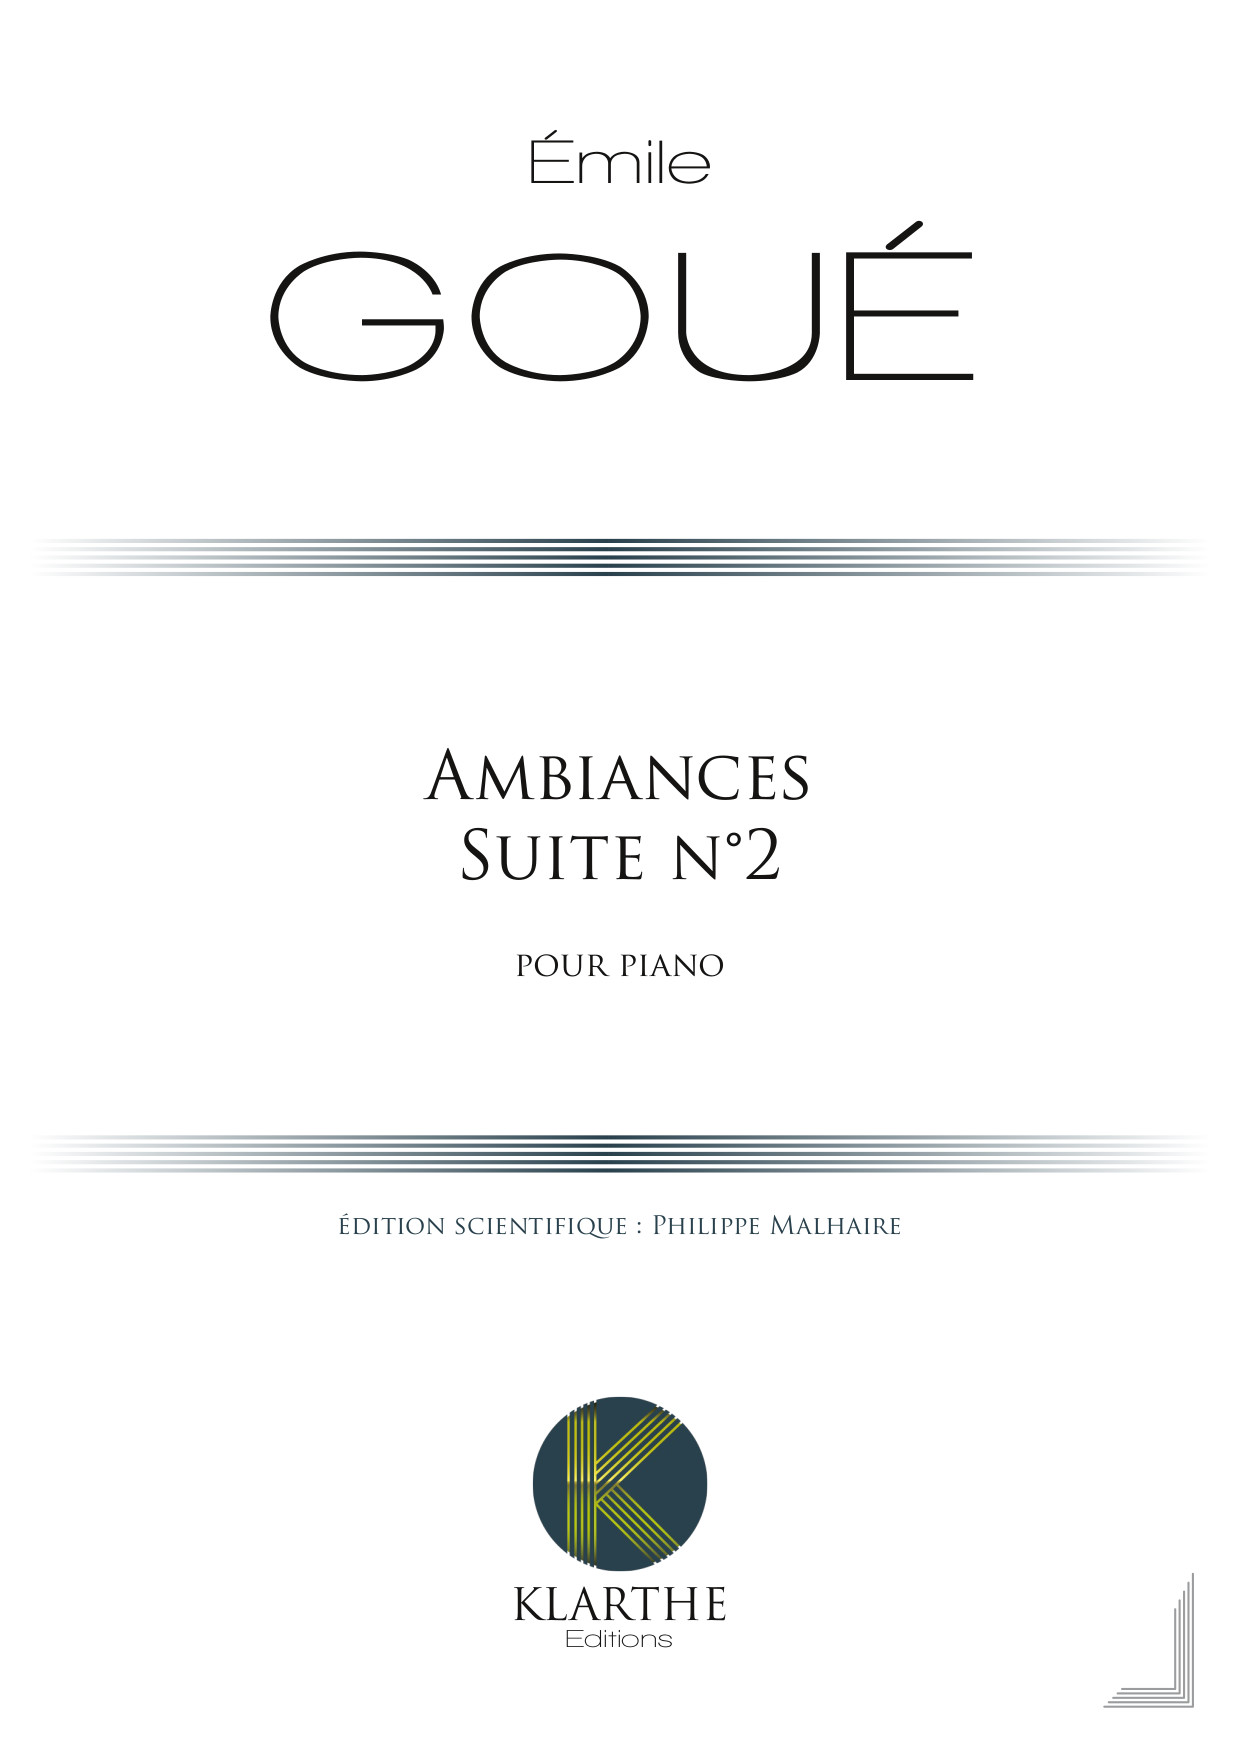 Ambiances, 2me Suite (GOUE EMILE)